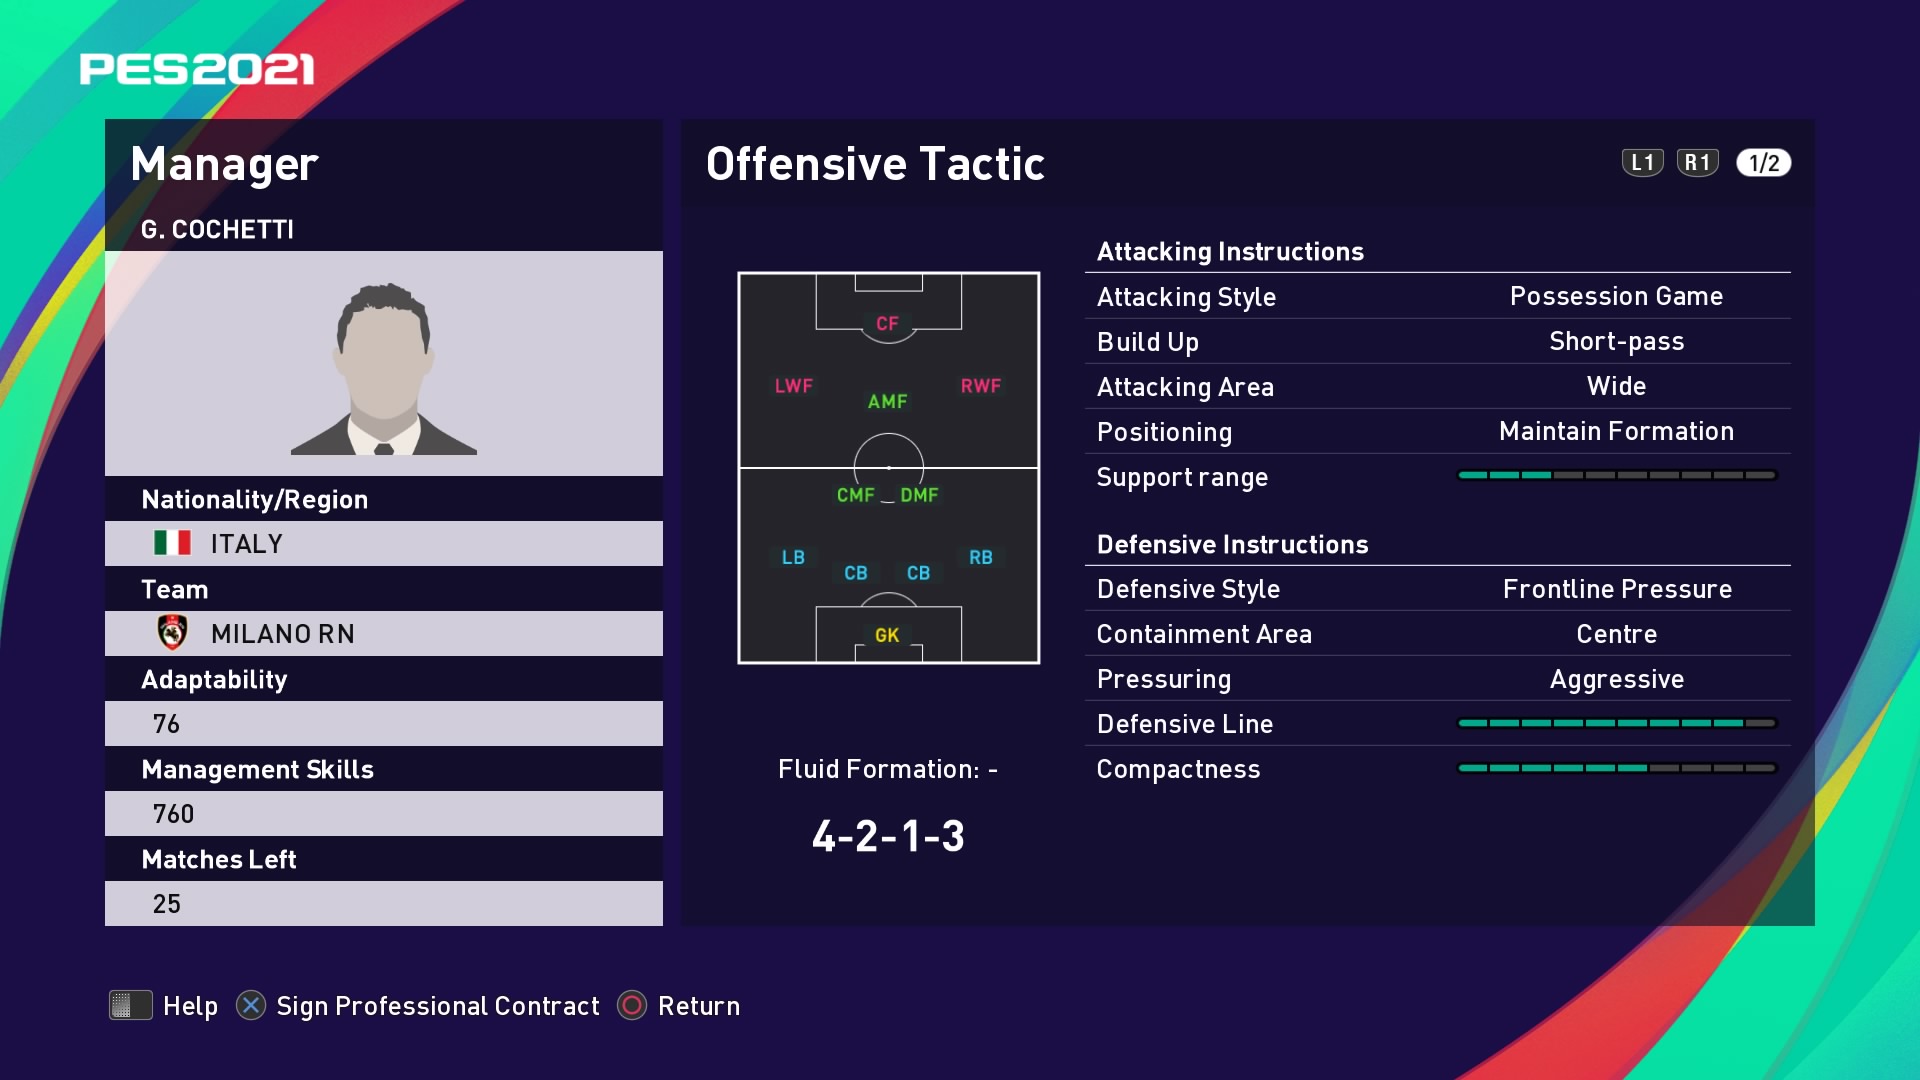 G. Cochetti (Stefano Pioli) Offensive Tactic in PES 2021 myClub